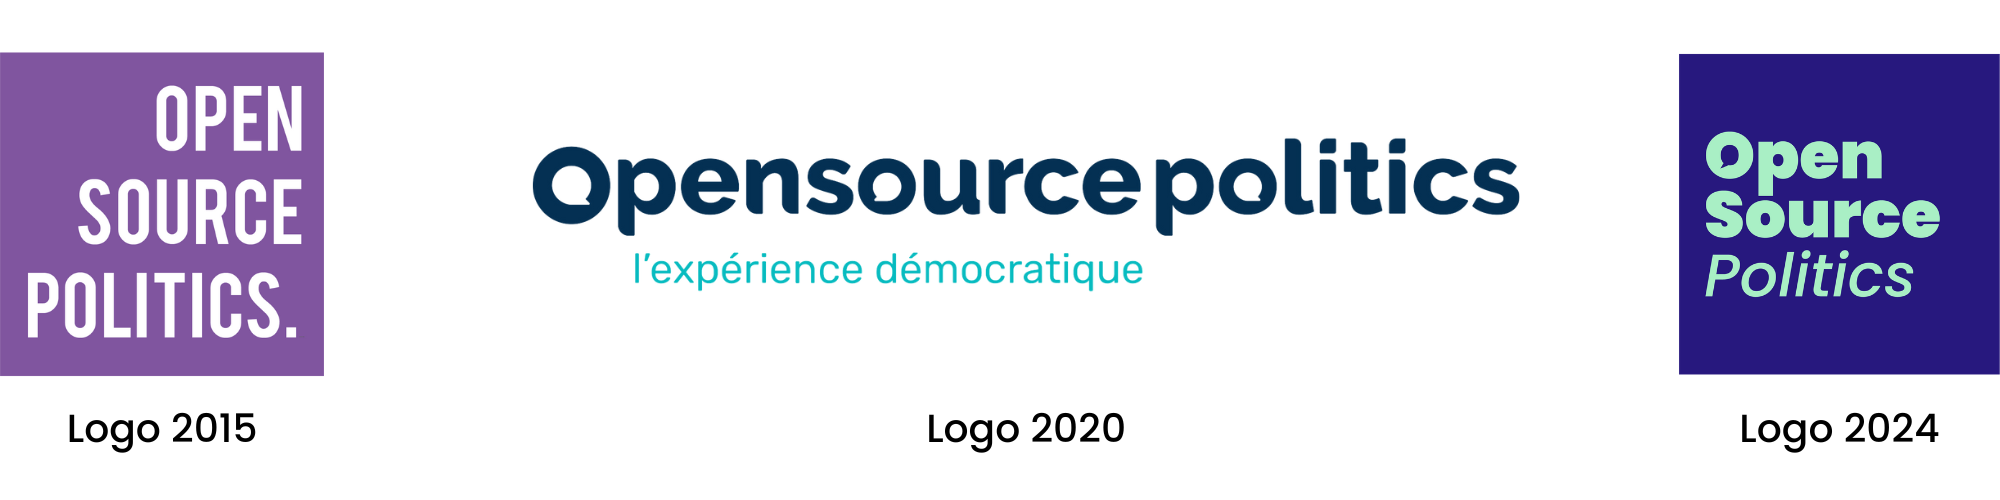 Évolution du logo d'Open Source Politics depuis 2015